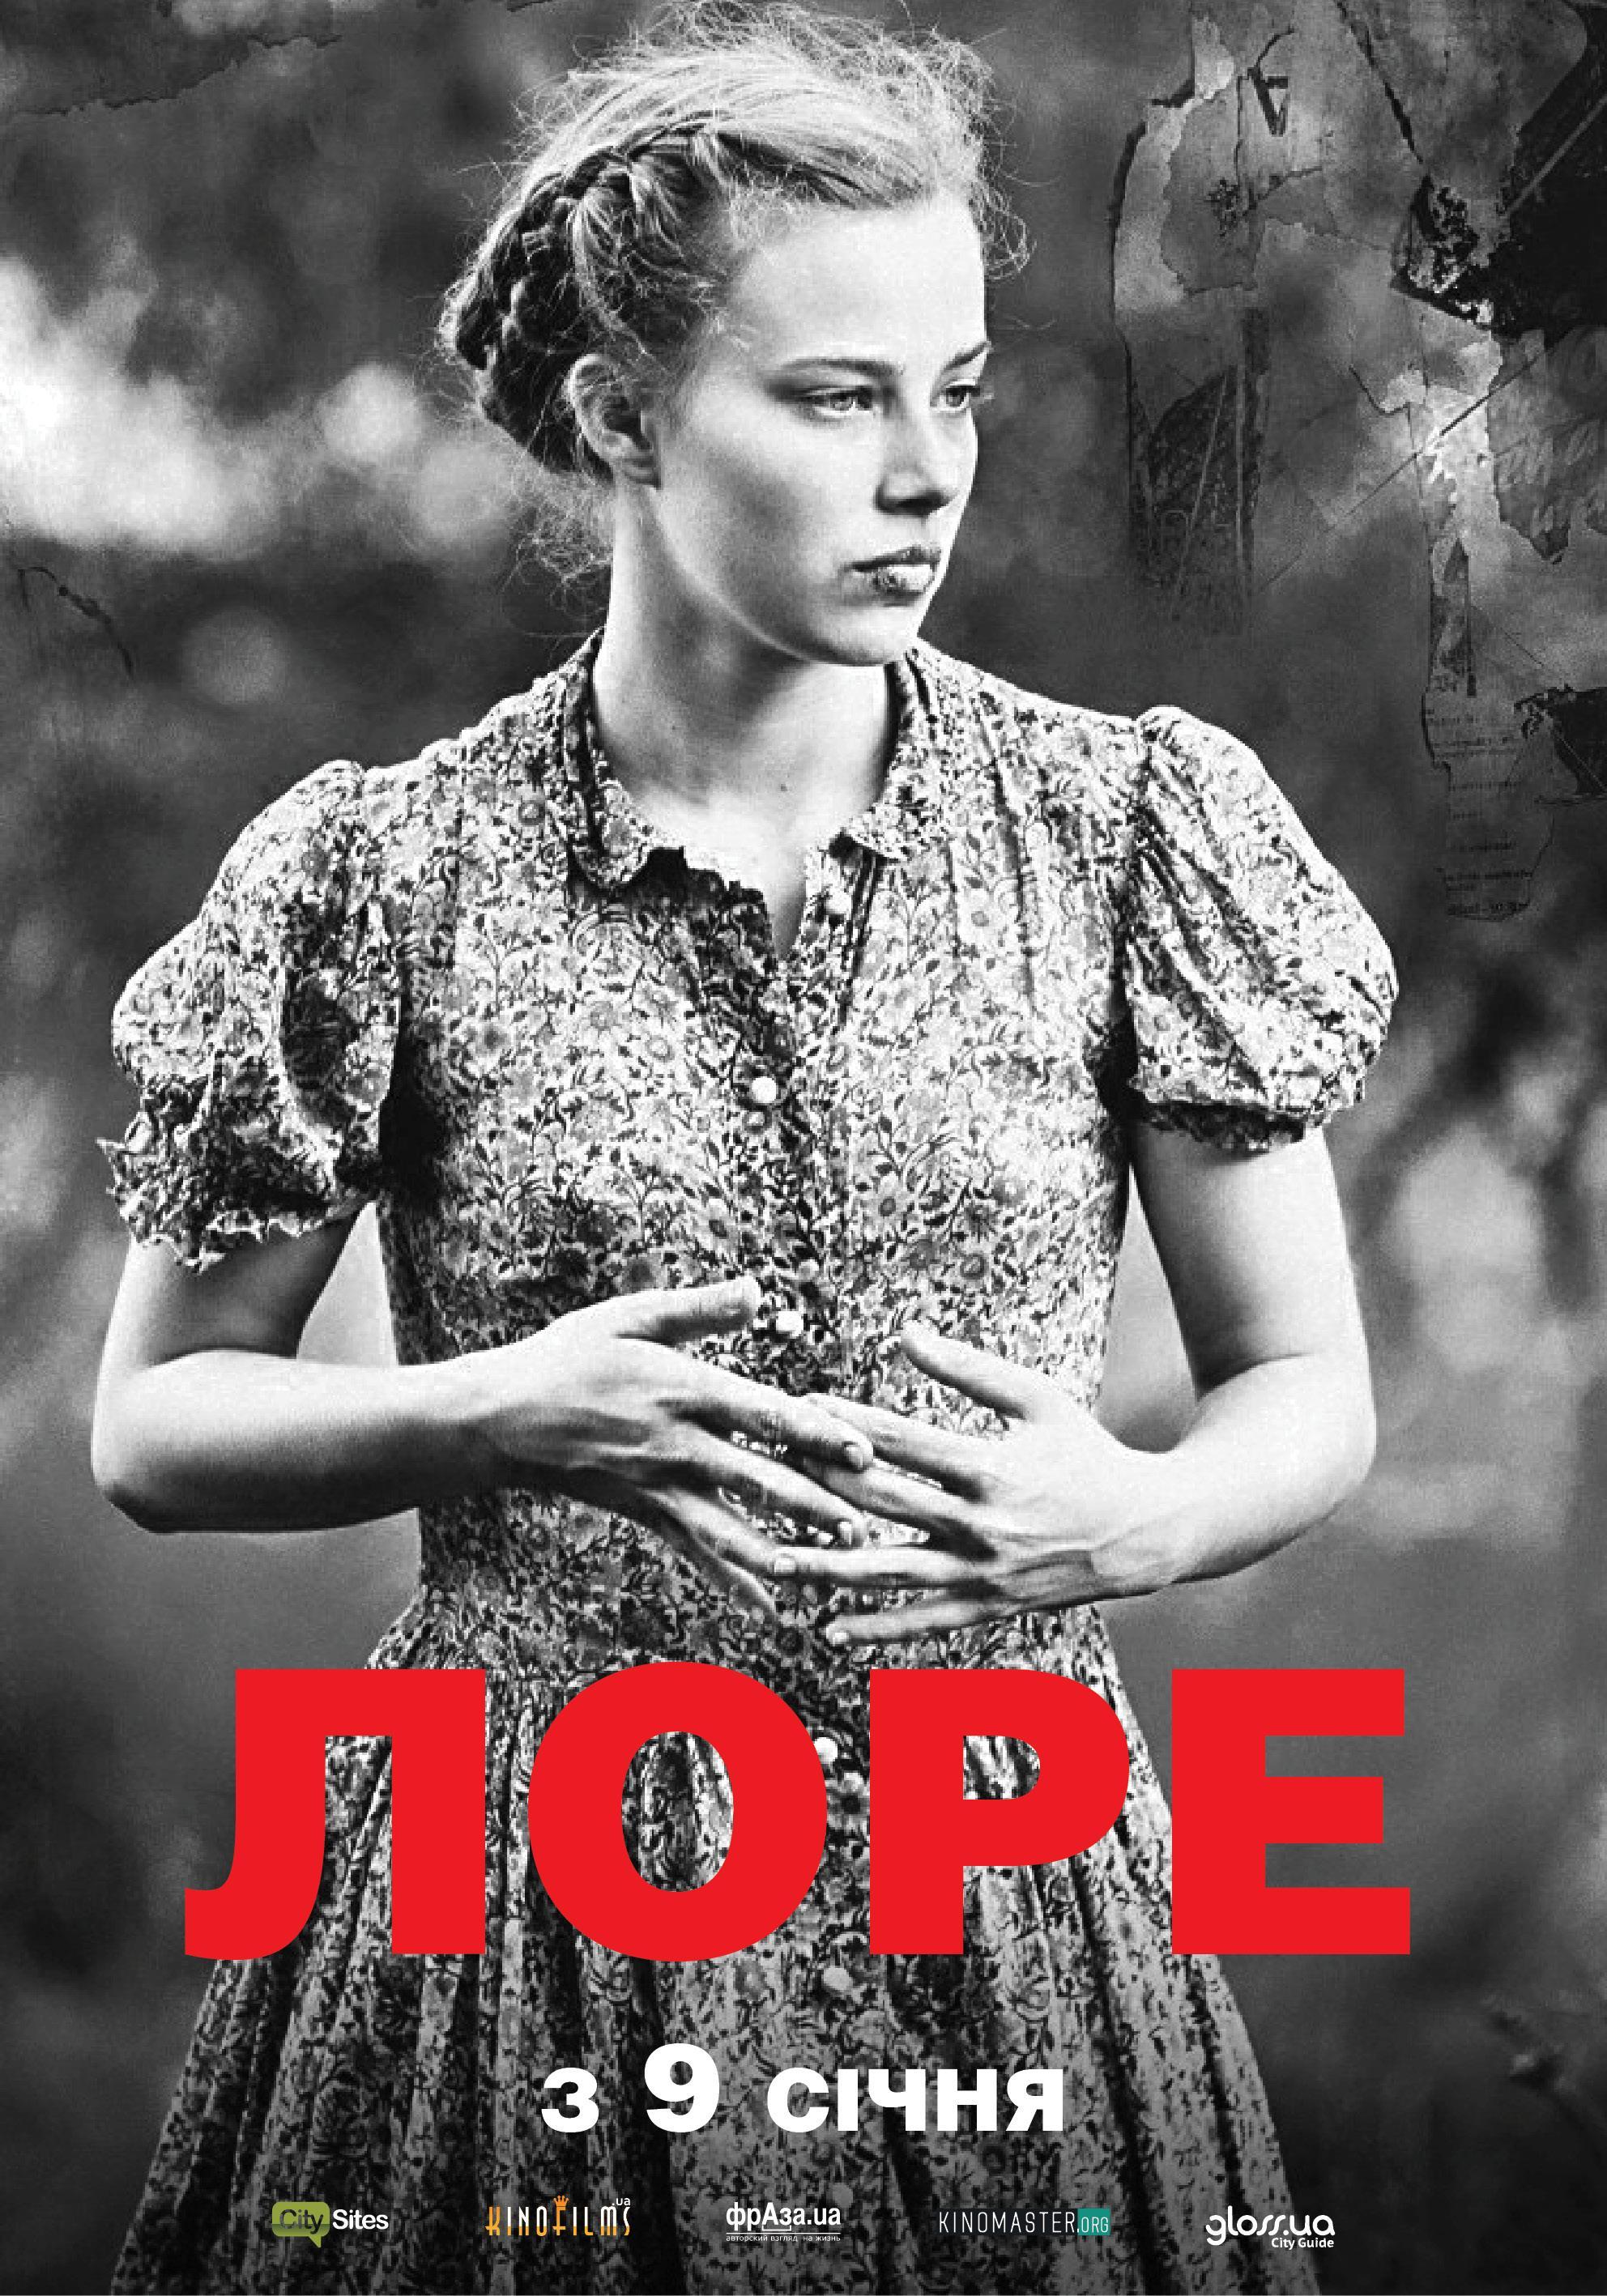 Постер фильма Лоре | Lore